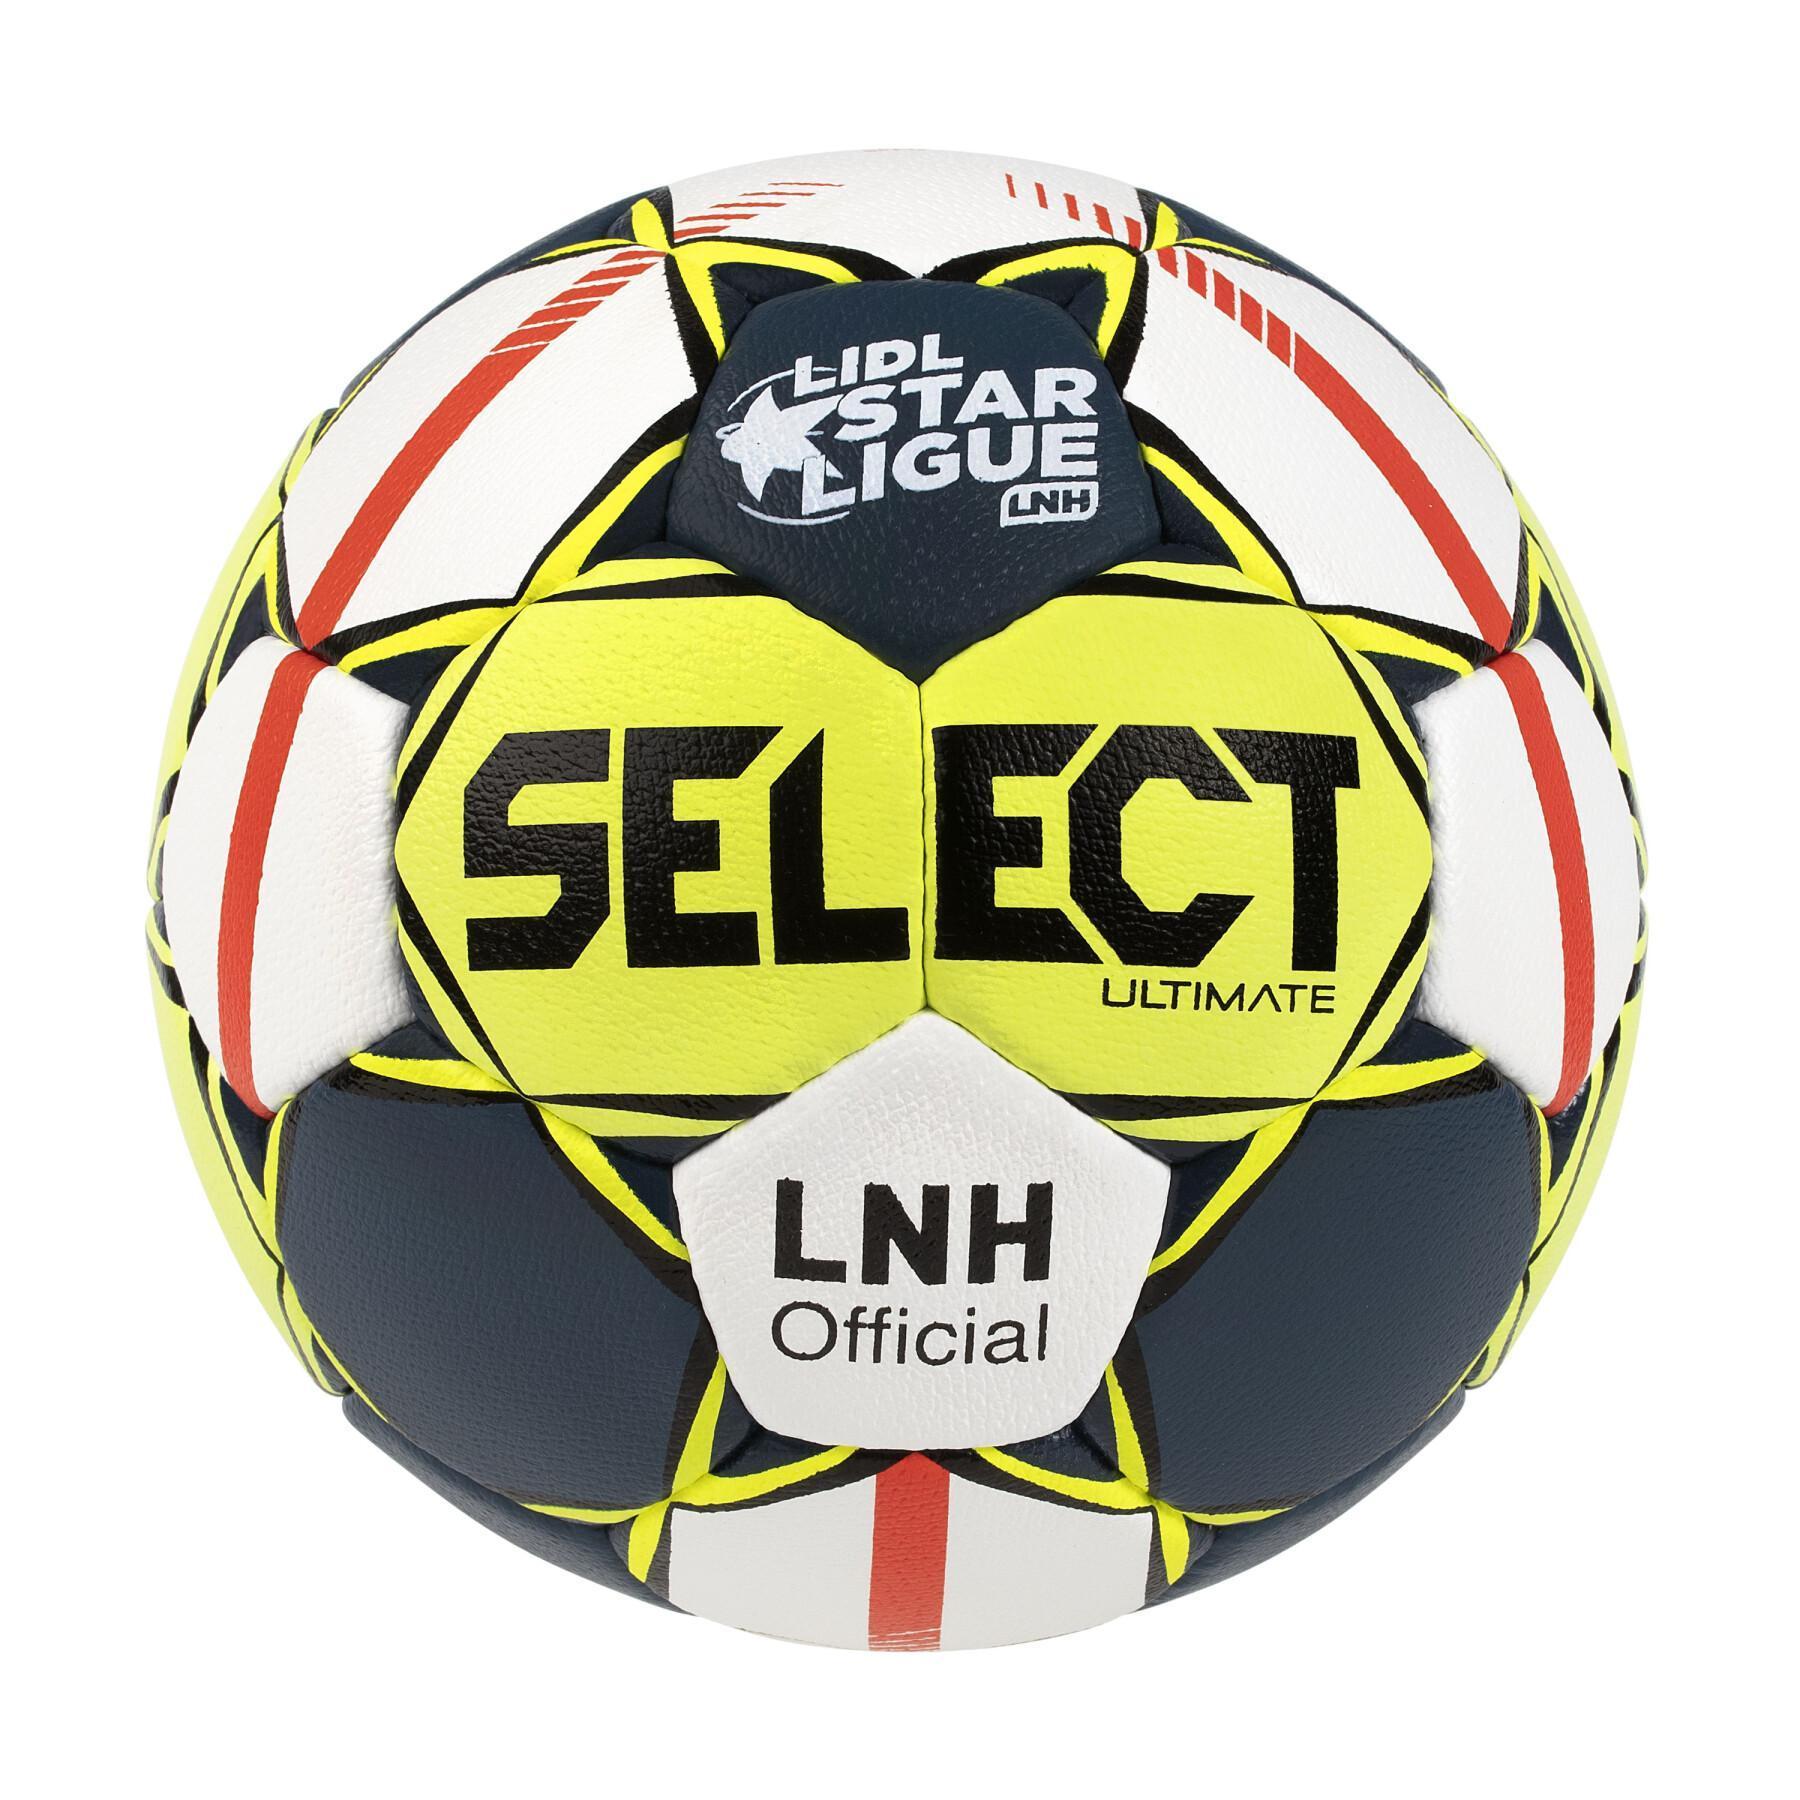 Balón oficial LNH 2019/20